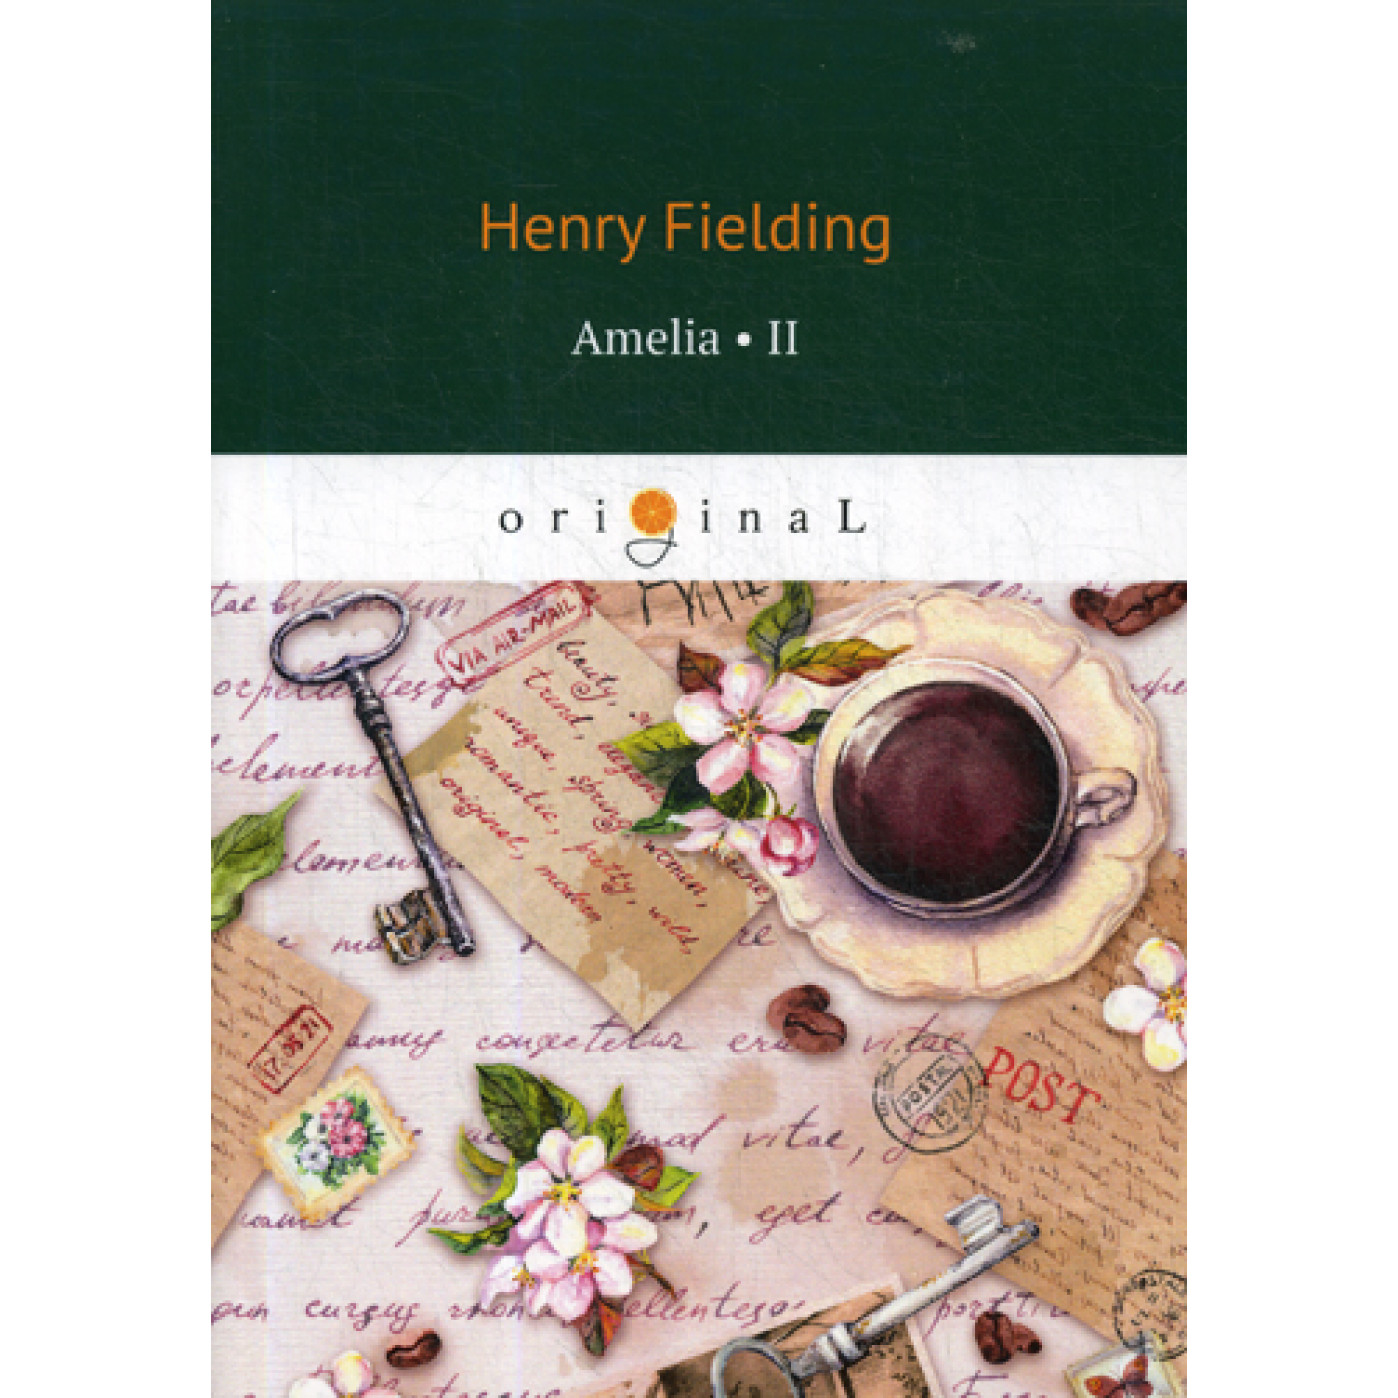 Fielding Henry "Amelia 2". H fielding